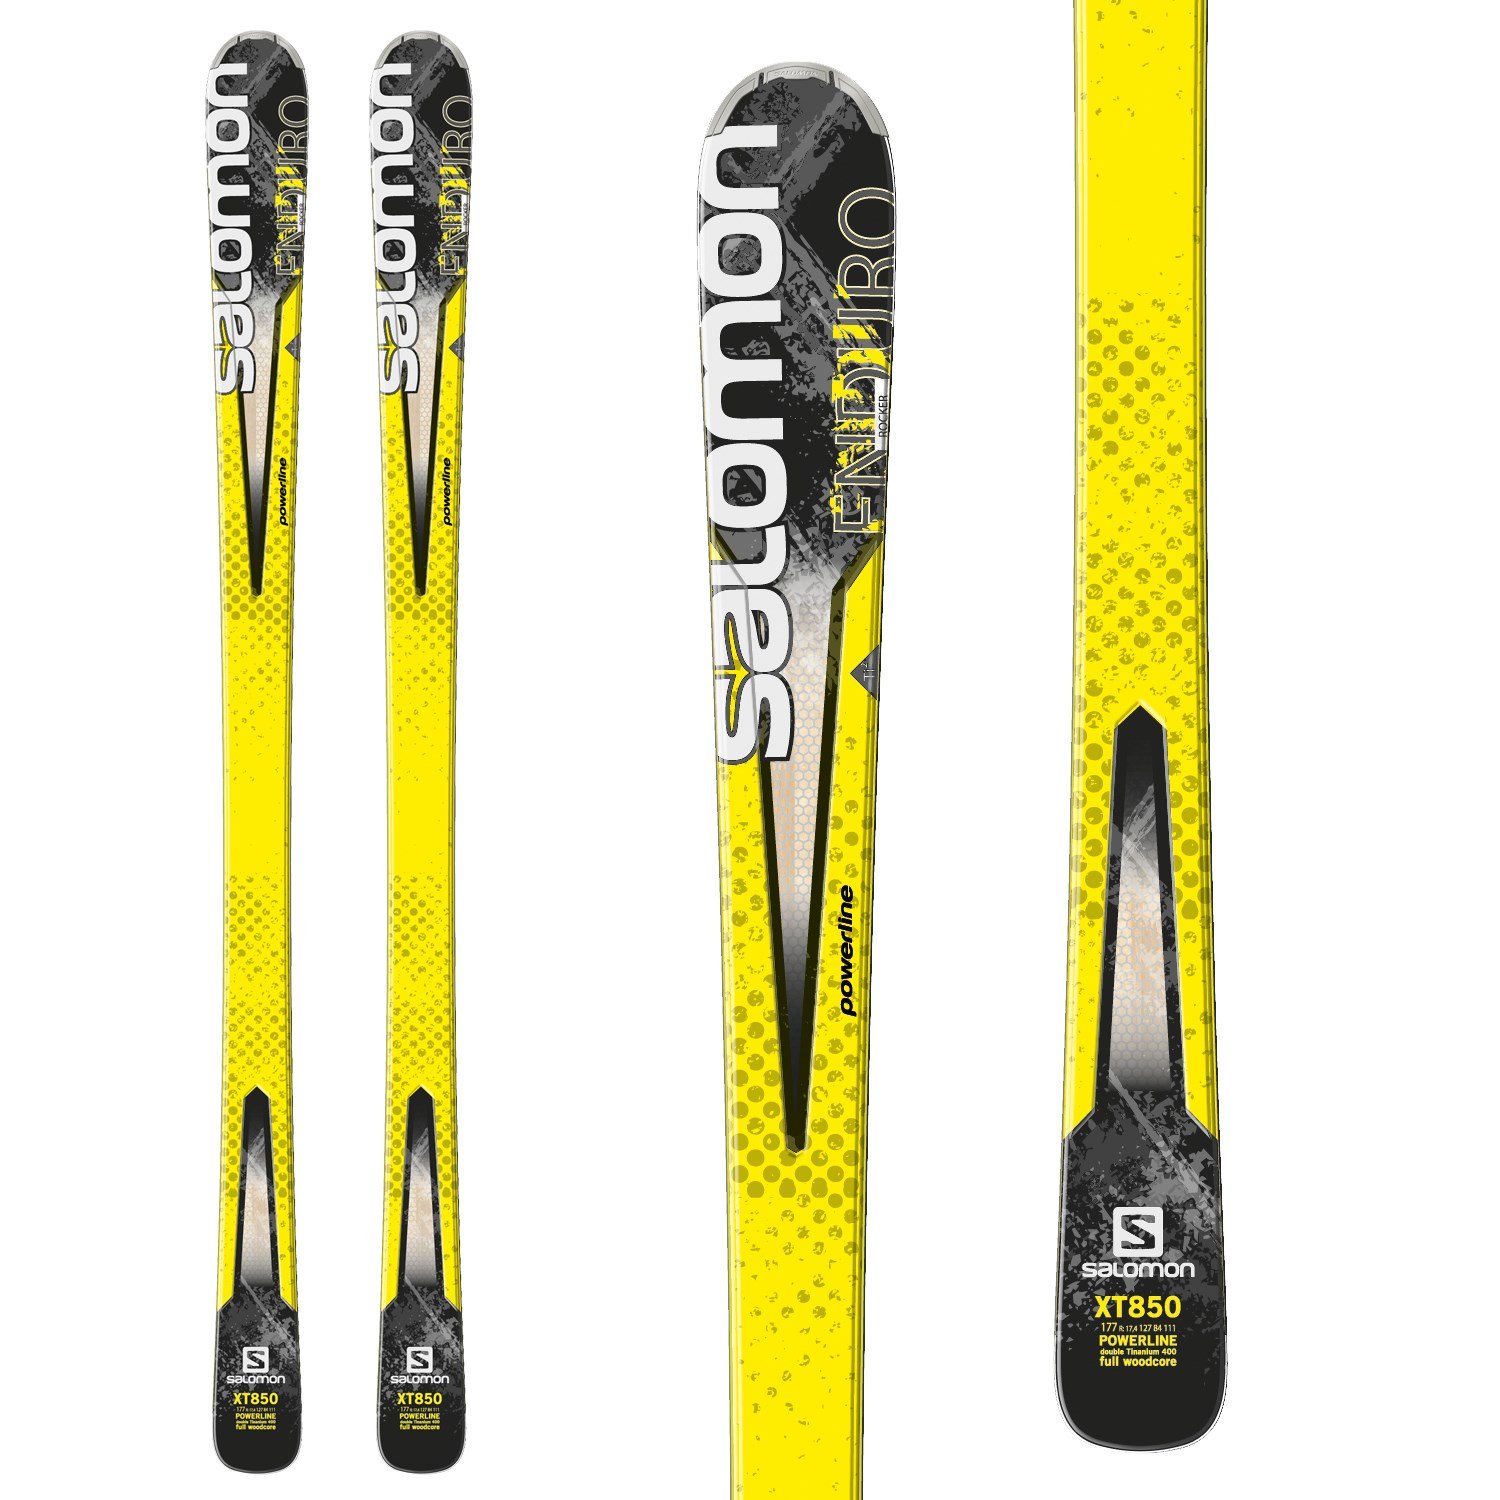 Salomon Enduro XT 850 Skis 2014 | evo